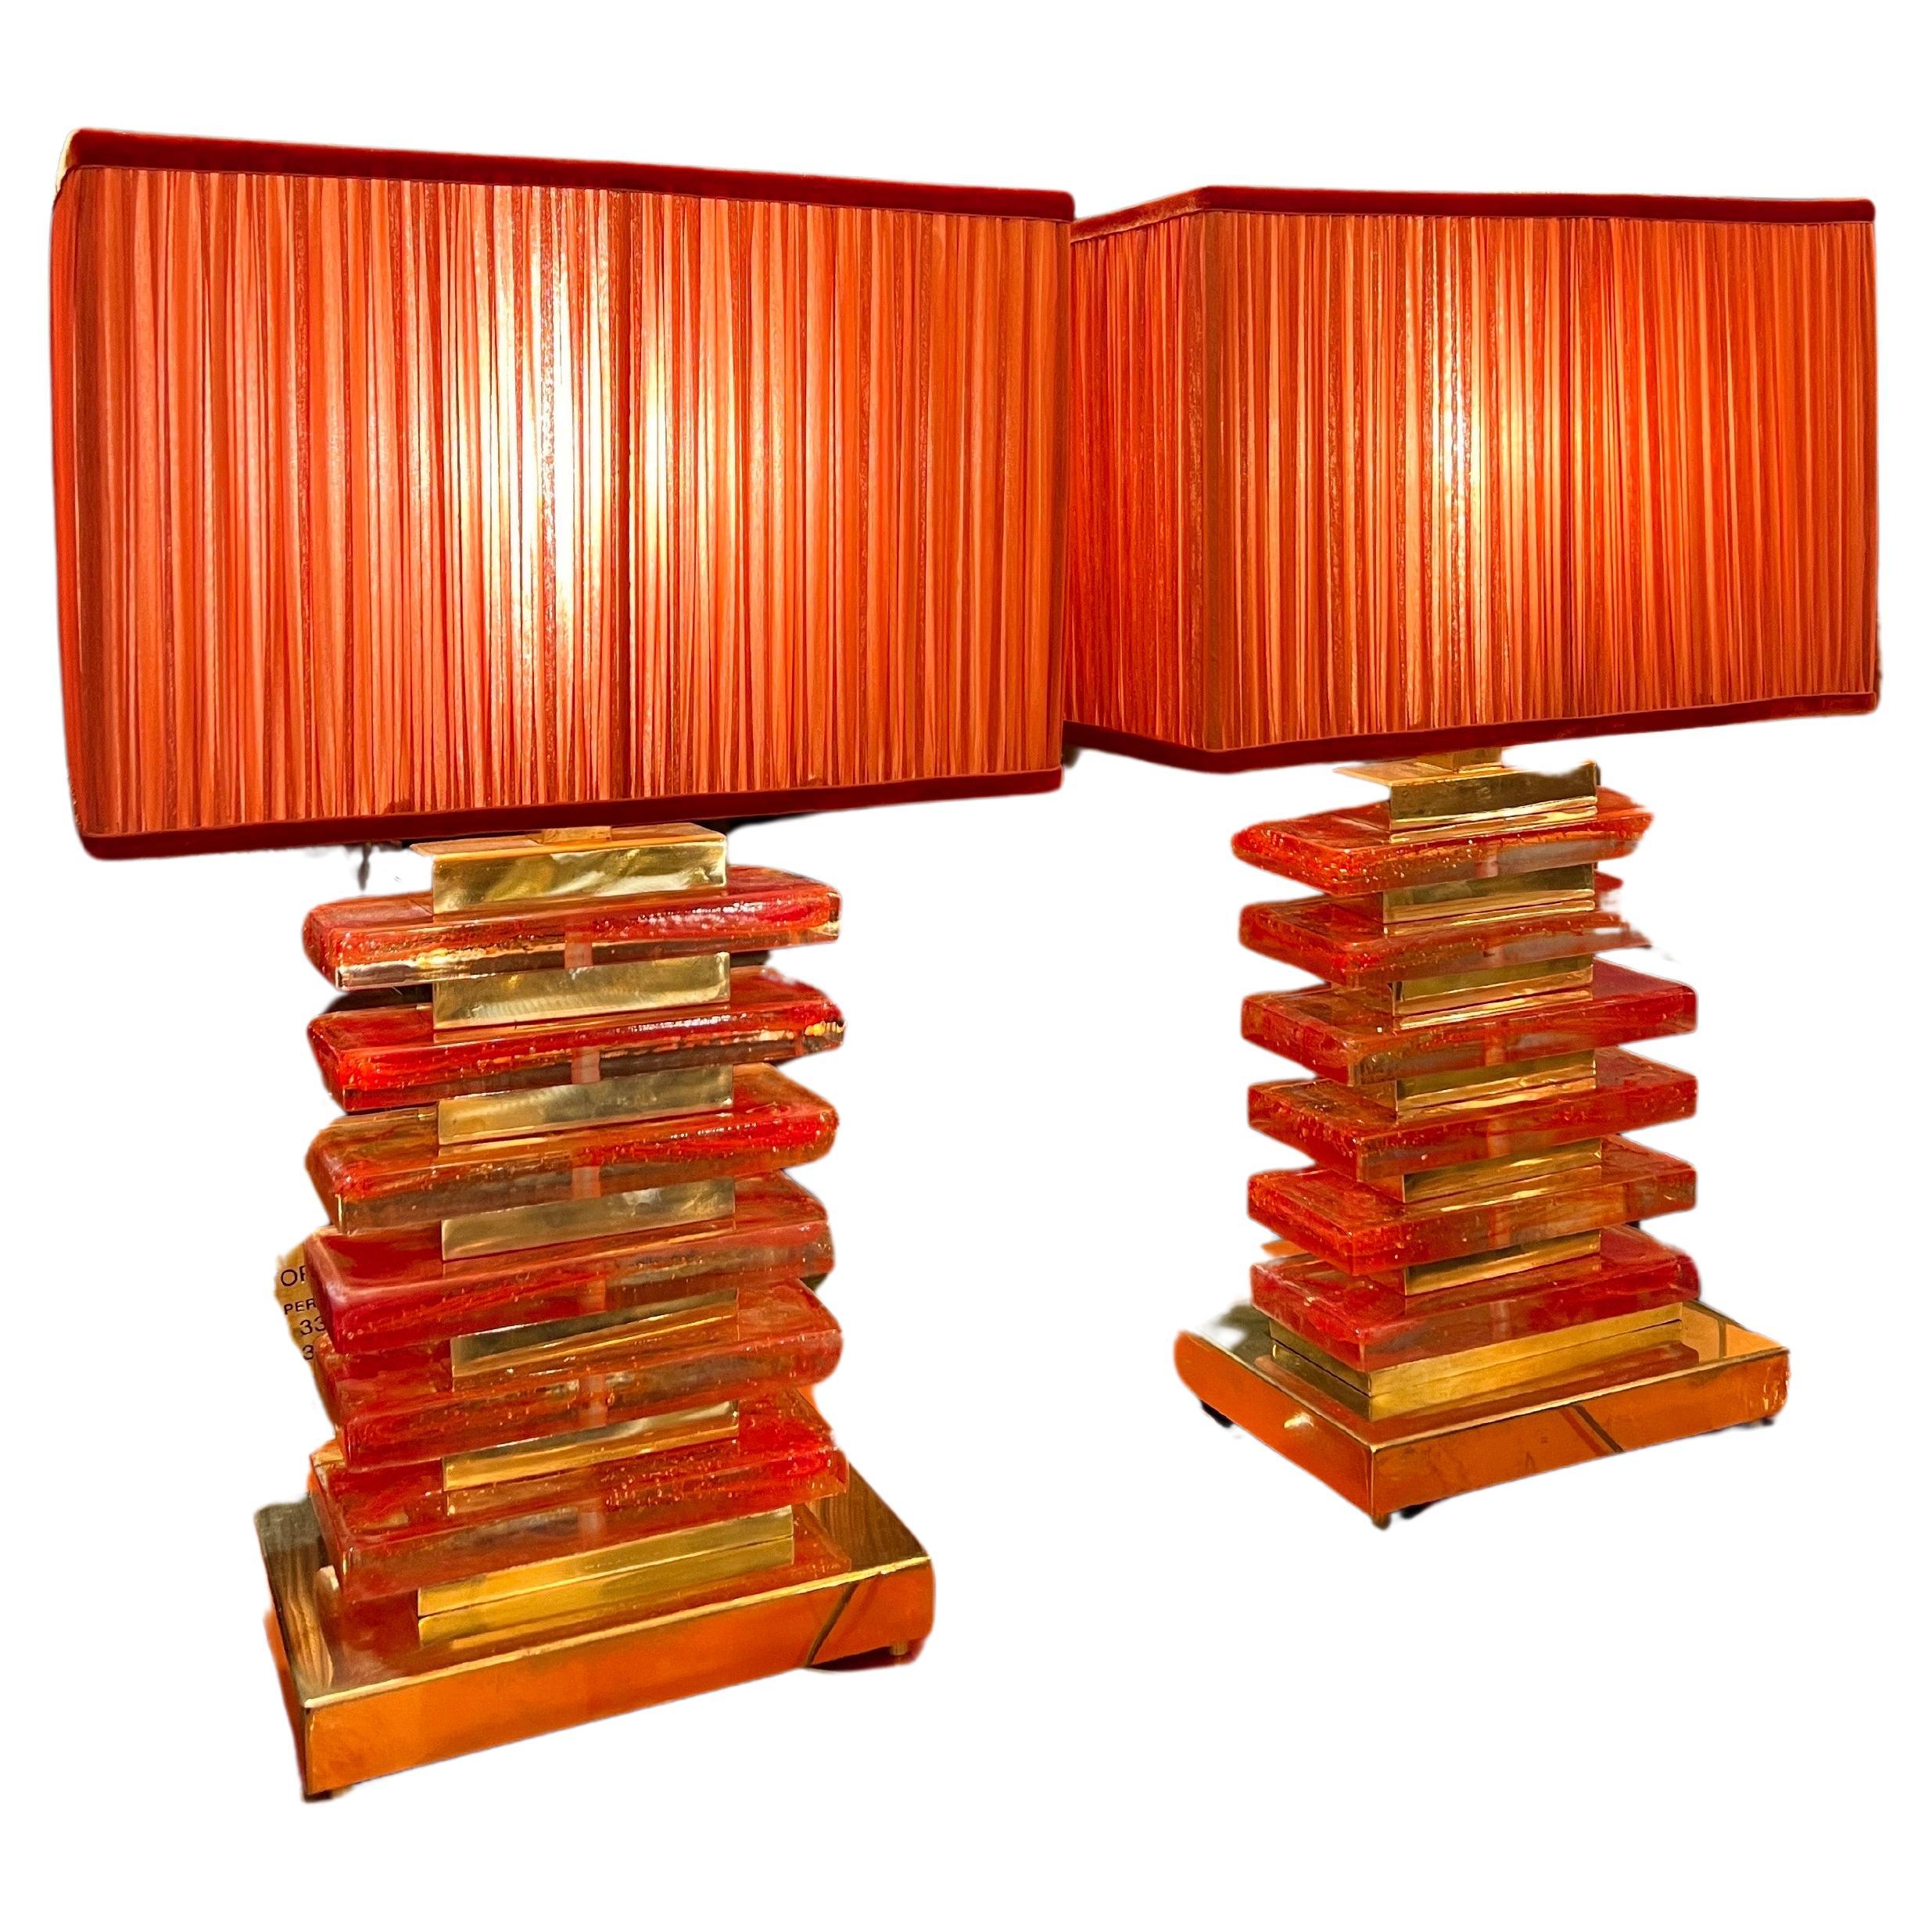 Coppia di lampade in vetro di Murano arancio e ottone presentate con nostri paralumi increspati a mano in chiffon di seta arancio. 
I blocchi di vetro di Murano arancio sono soffiati a mano con vetro di Murano trasparente creando un effetto